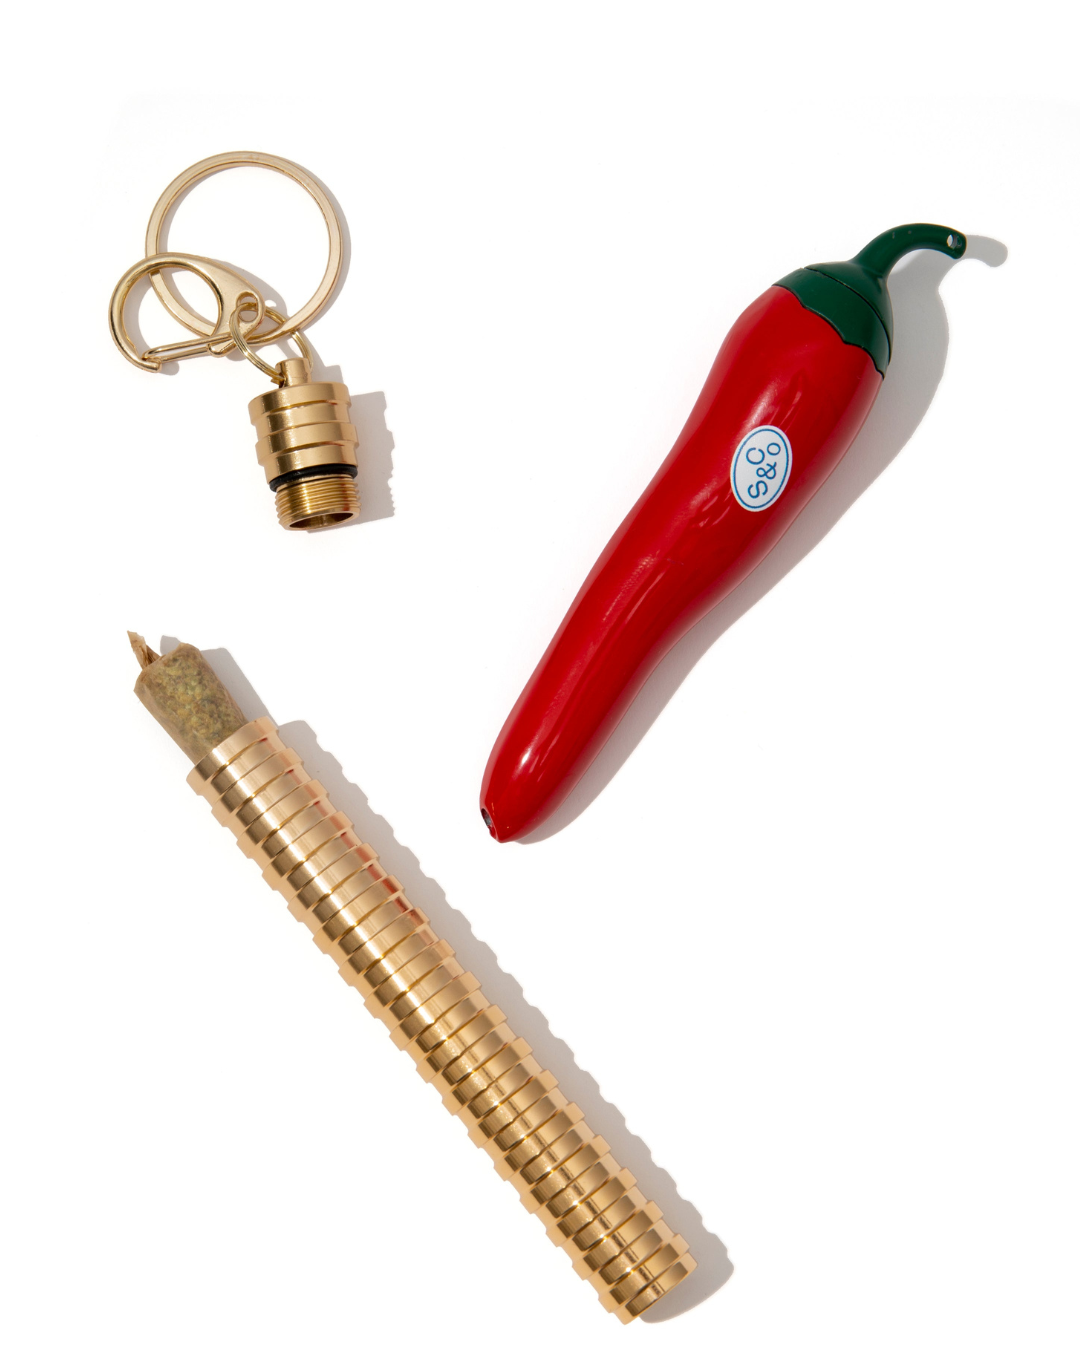 Chili Pepper Lighter + Joint Case Kit